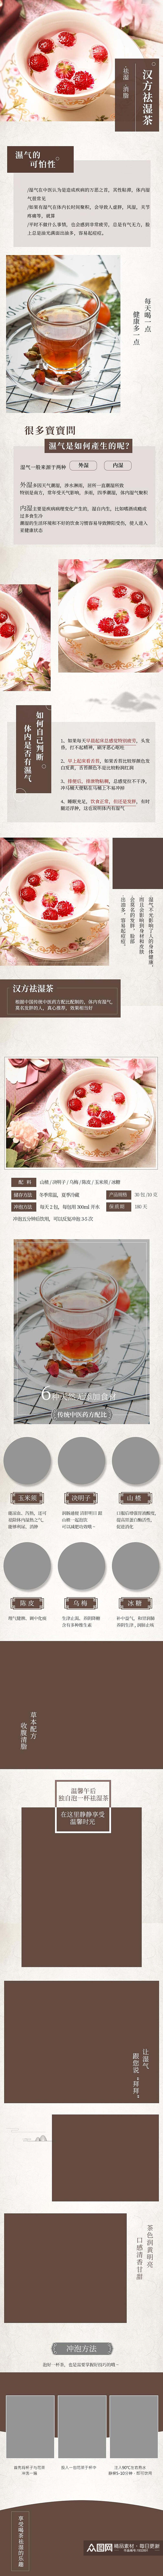 汉方祛湿茶茶类电商详情页素材